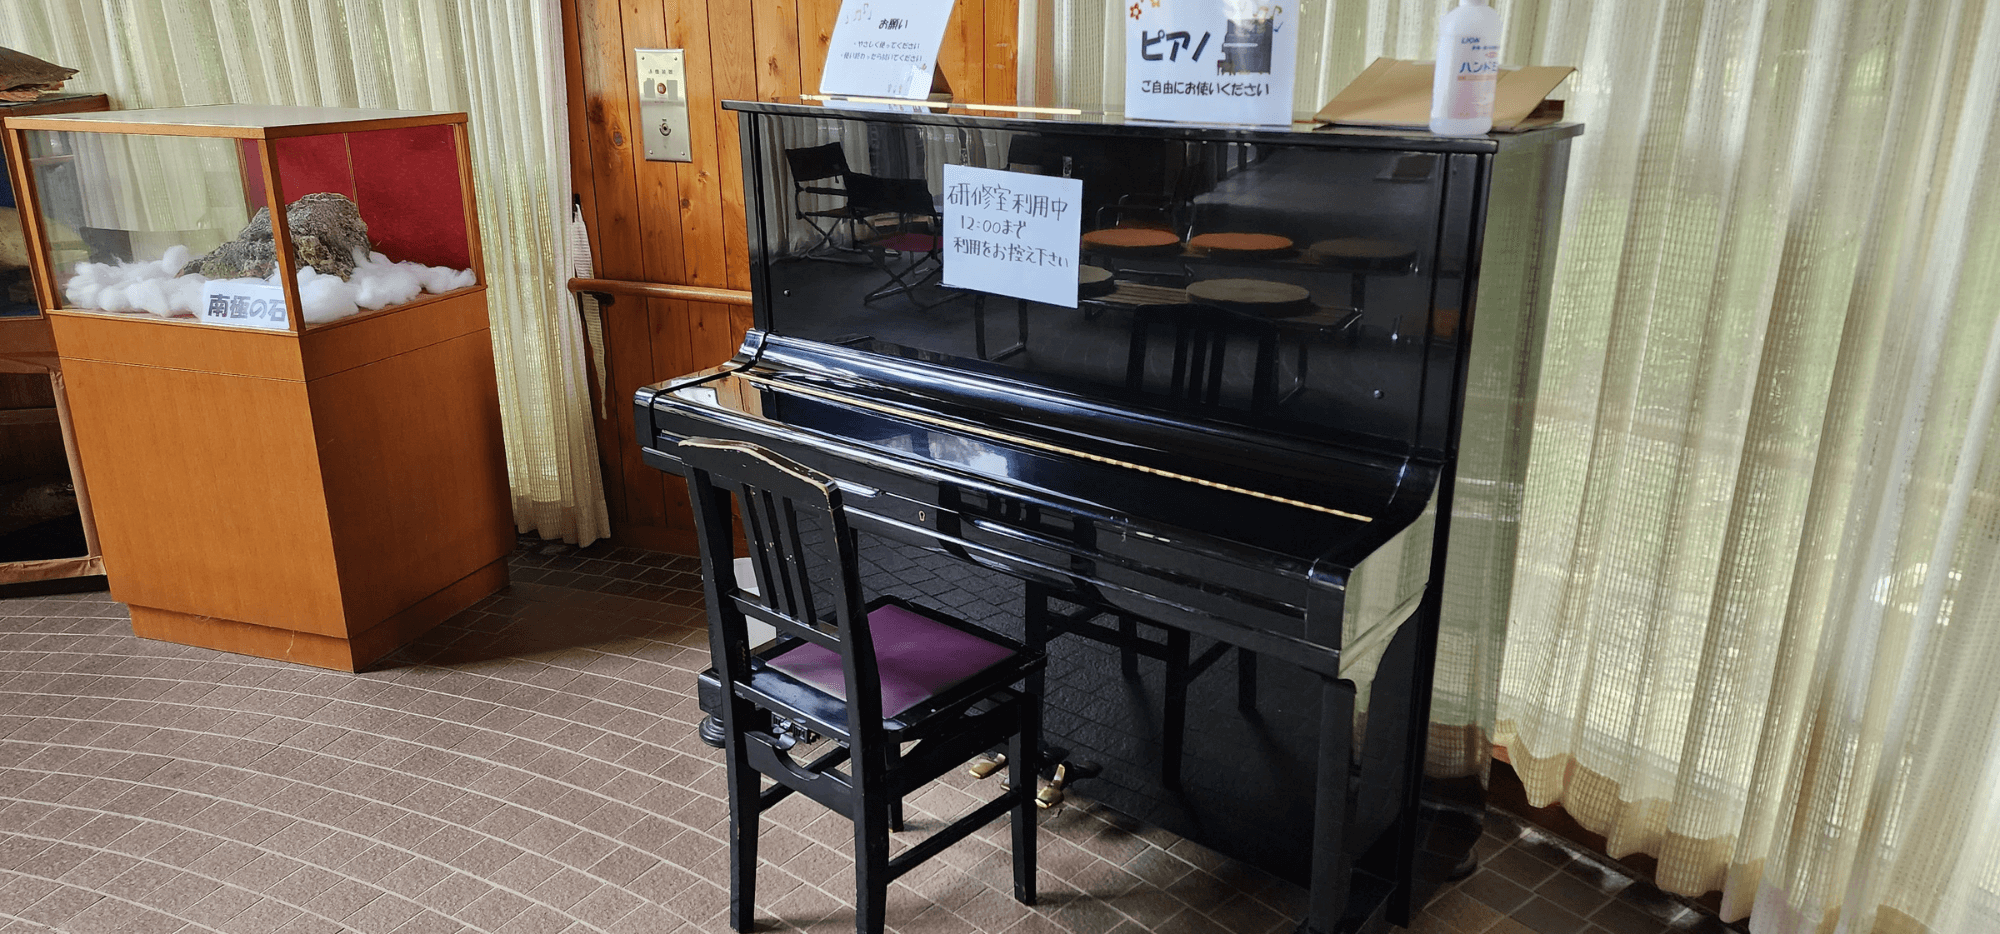 堀兼・上赤坂公園のストリートピアノ